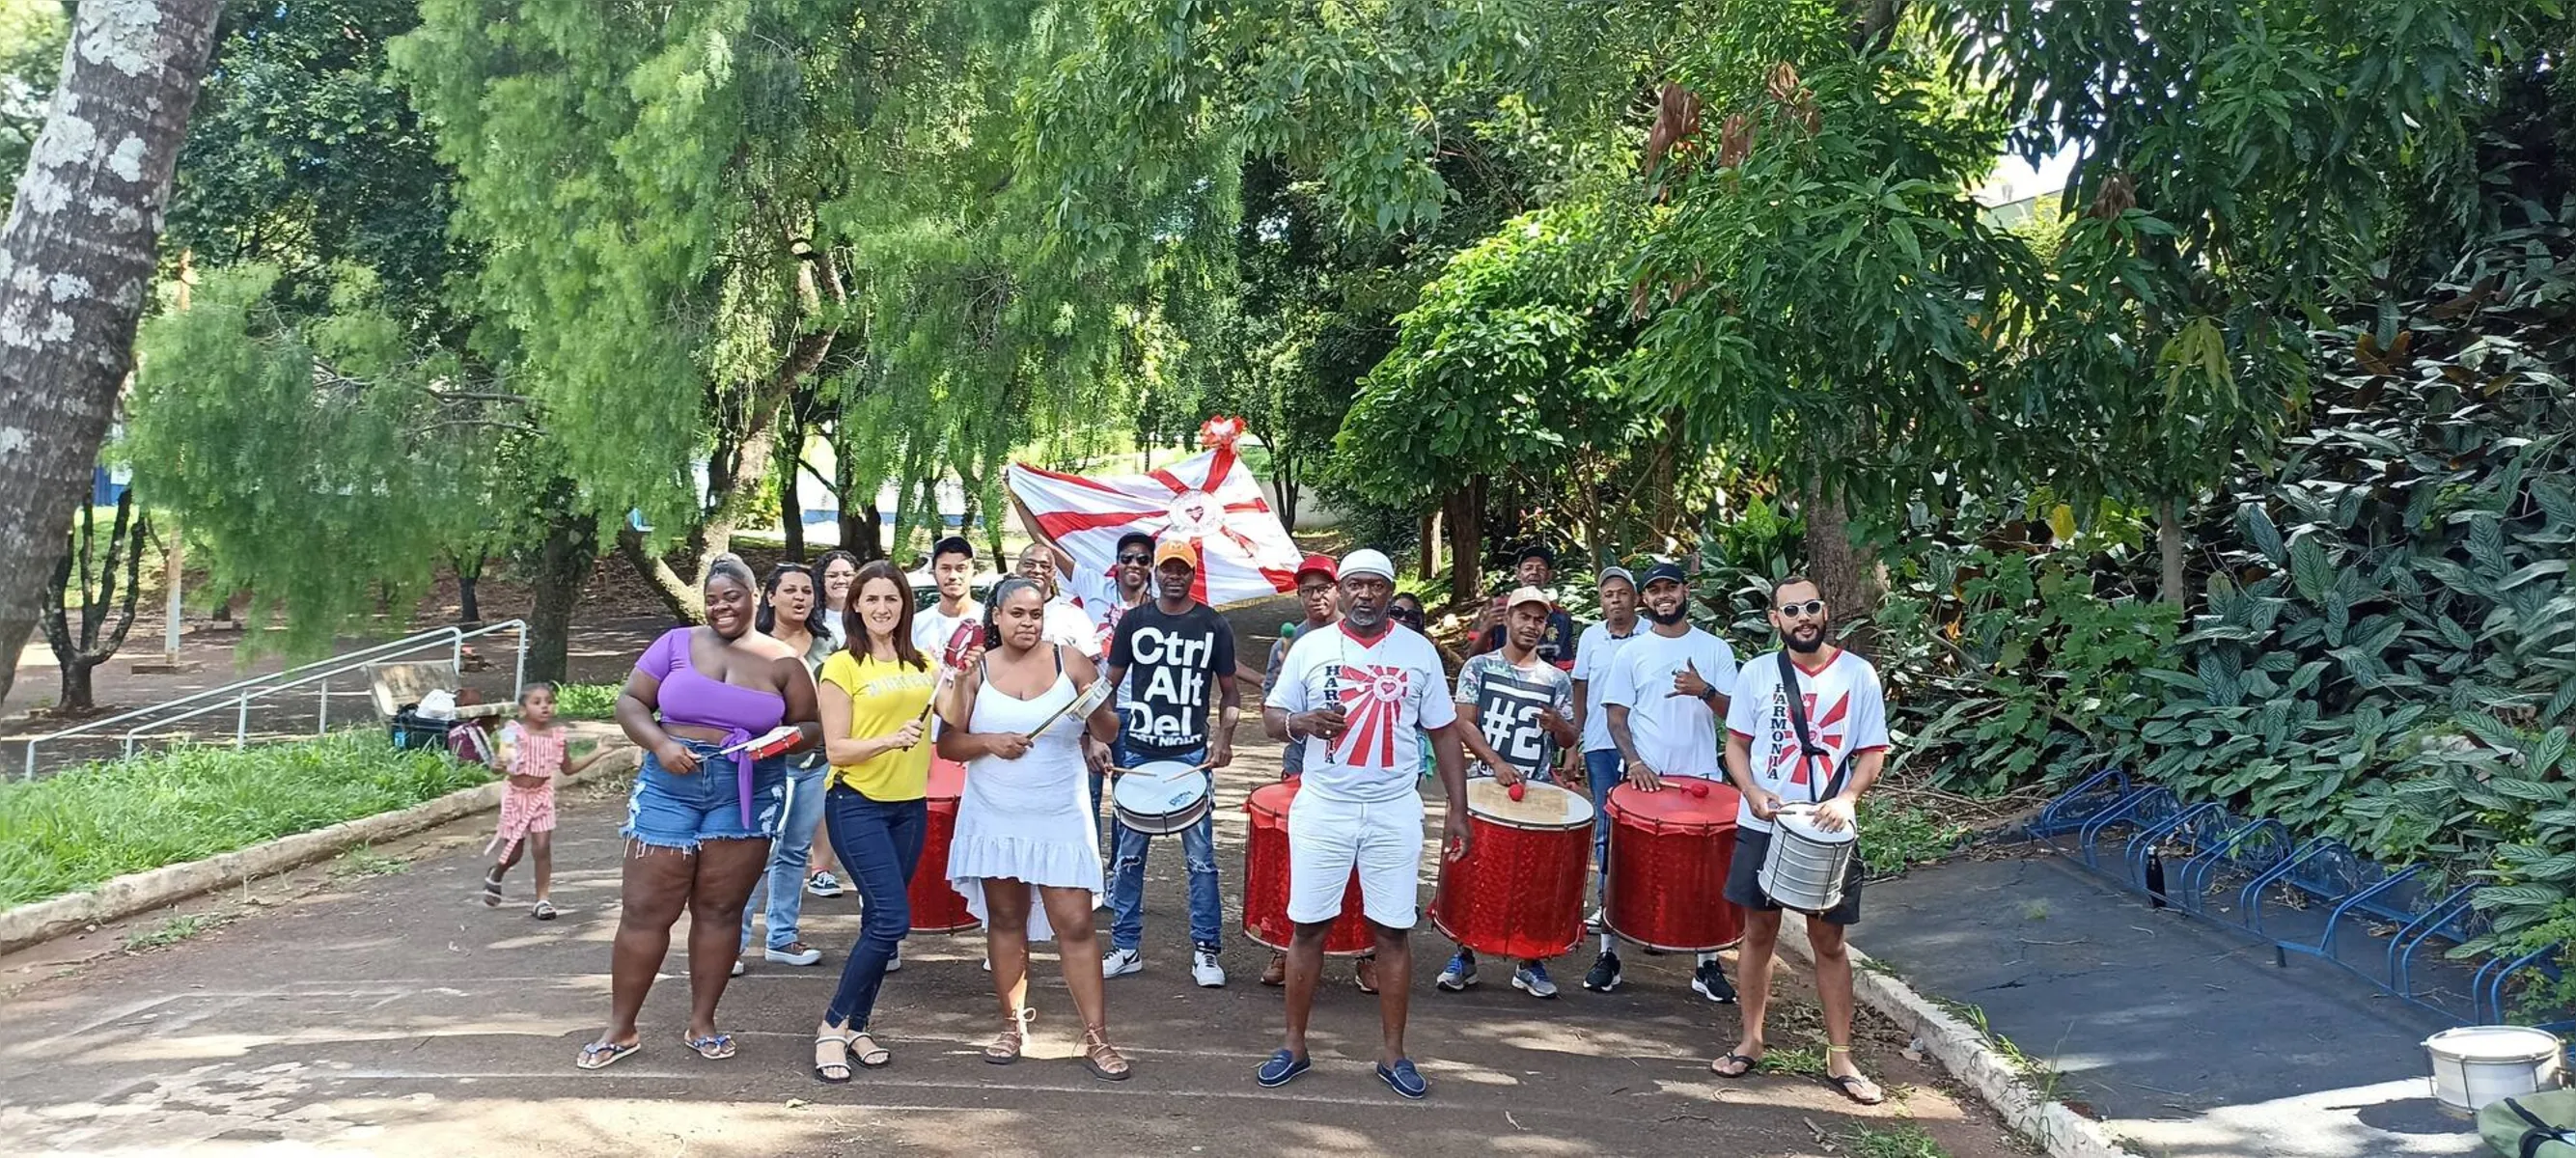 Explode Coração: única escola do Carnaval de Londrina este ano carrega a responsabilidade de preservar o samba